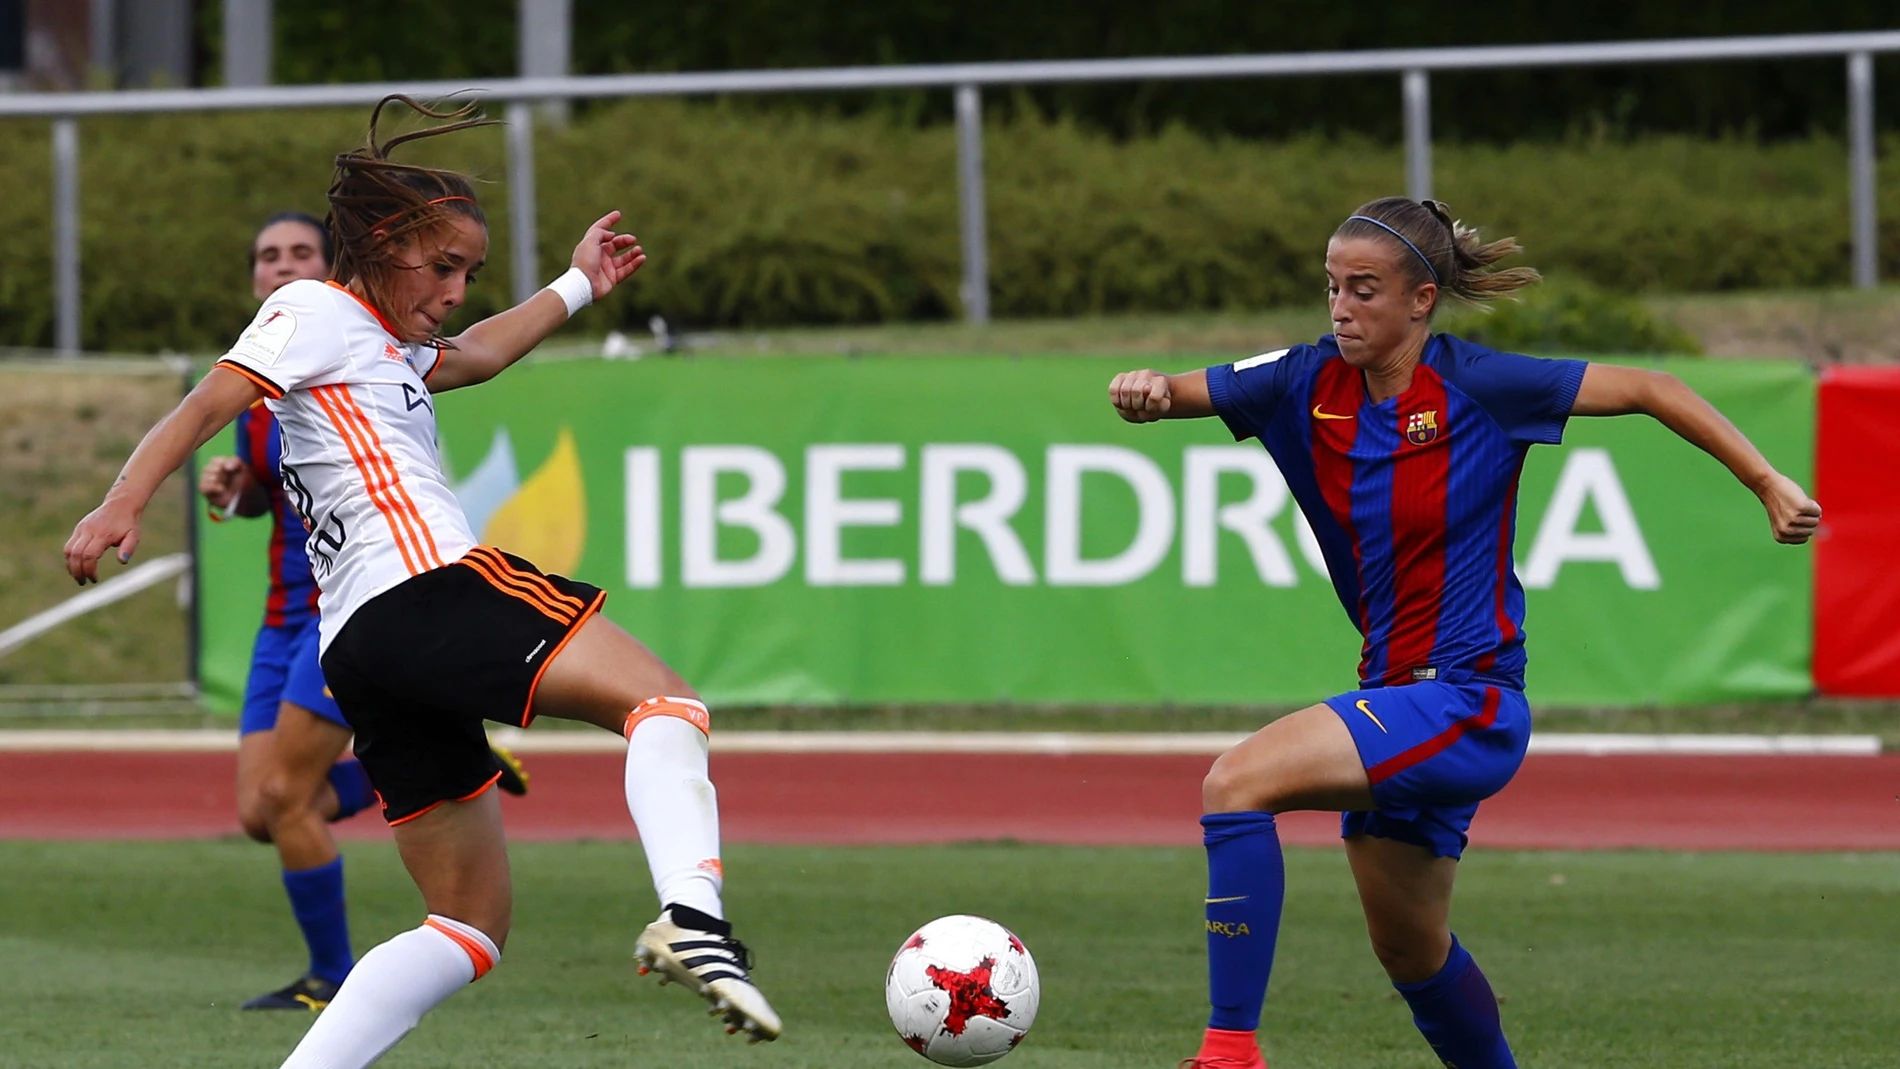 La jugadora del Barcelona Bárbara lucha el balón con Nicart, del Valencia